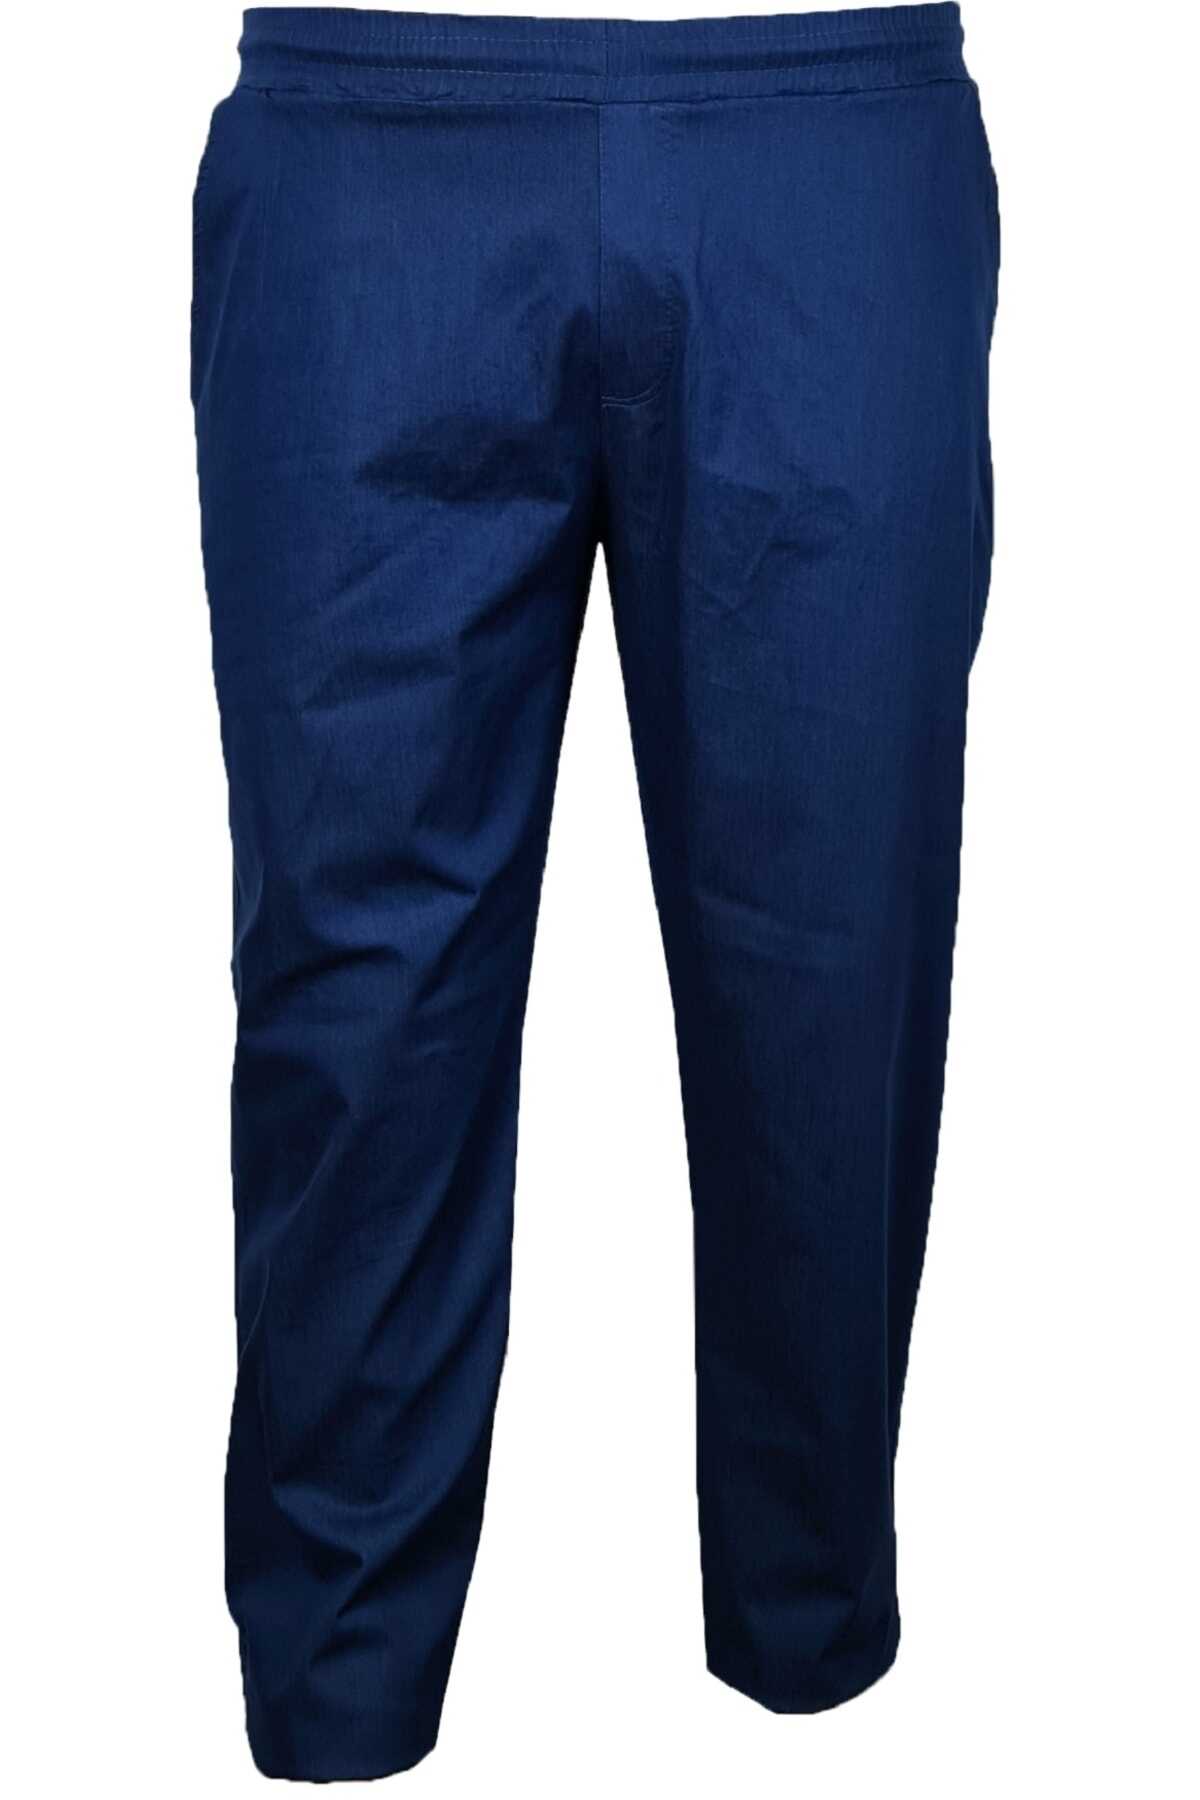 شلوار جین سایز بزرگ کمر کش جیب دار مردانه آبی کاربنی برند Lifeguard 